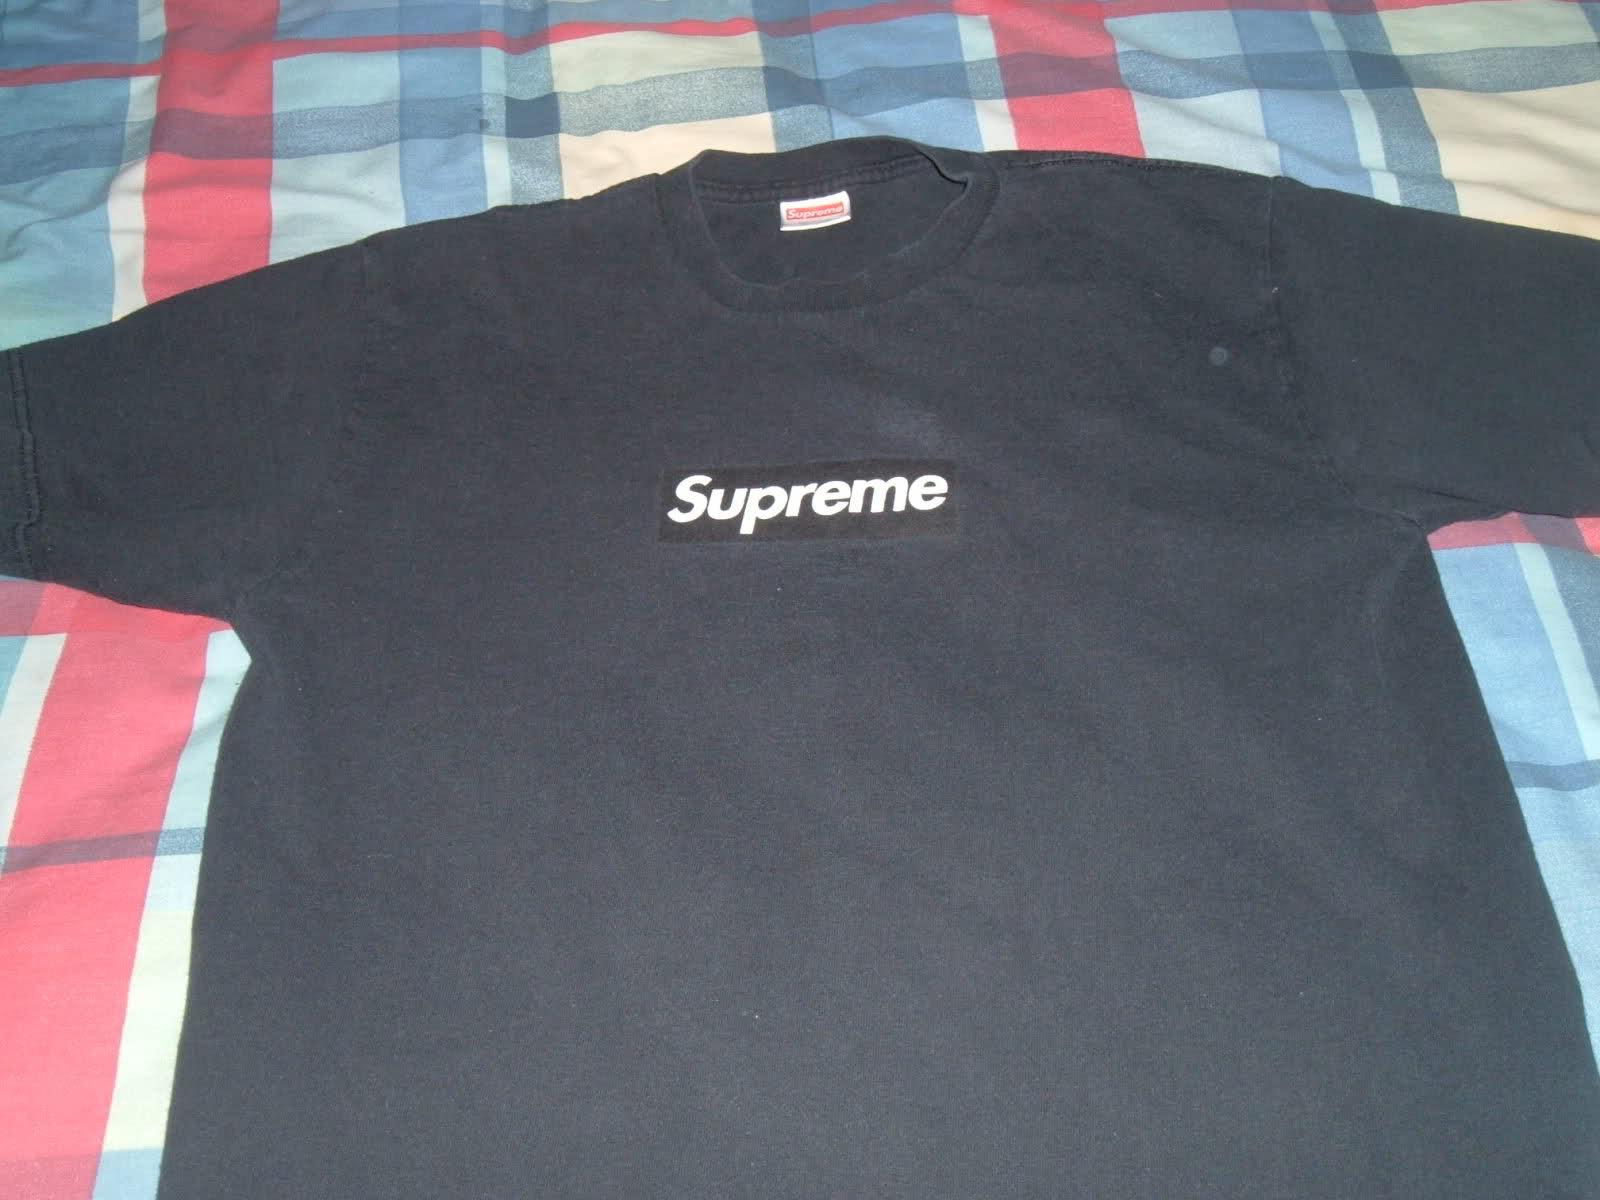 Real Black Supreme Box Logo - 2 Chainz Rocks Rare Supreme Black Box Logo T-Shirt, Joyrich LA ...